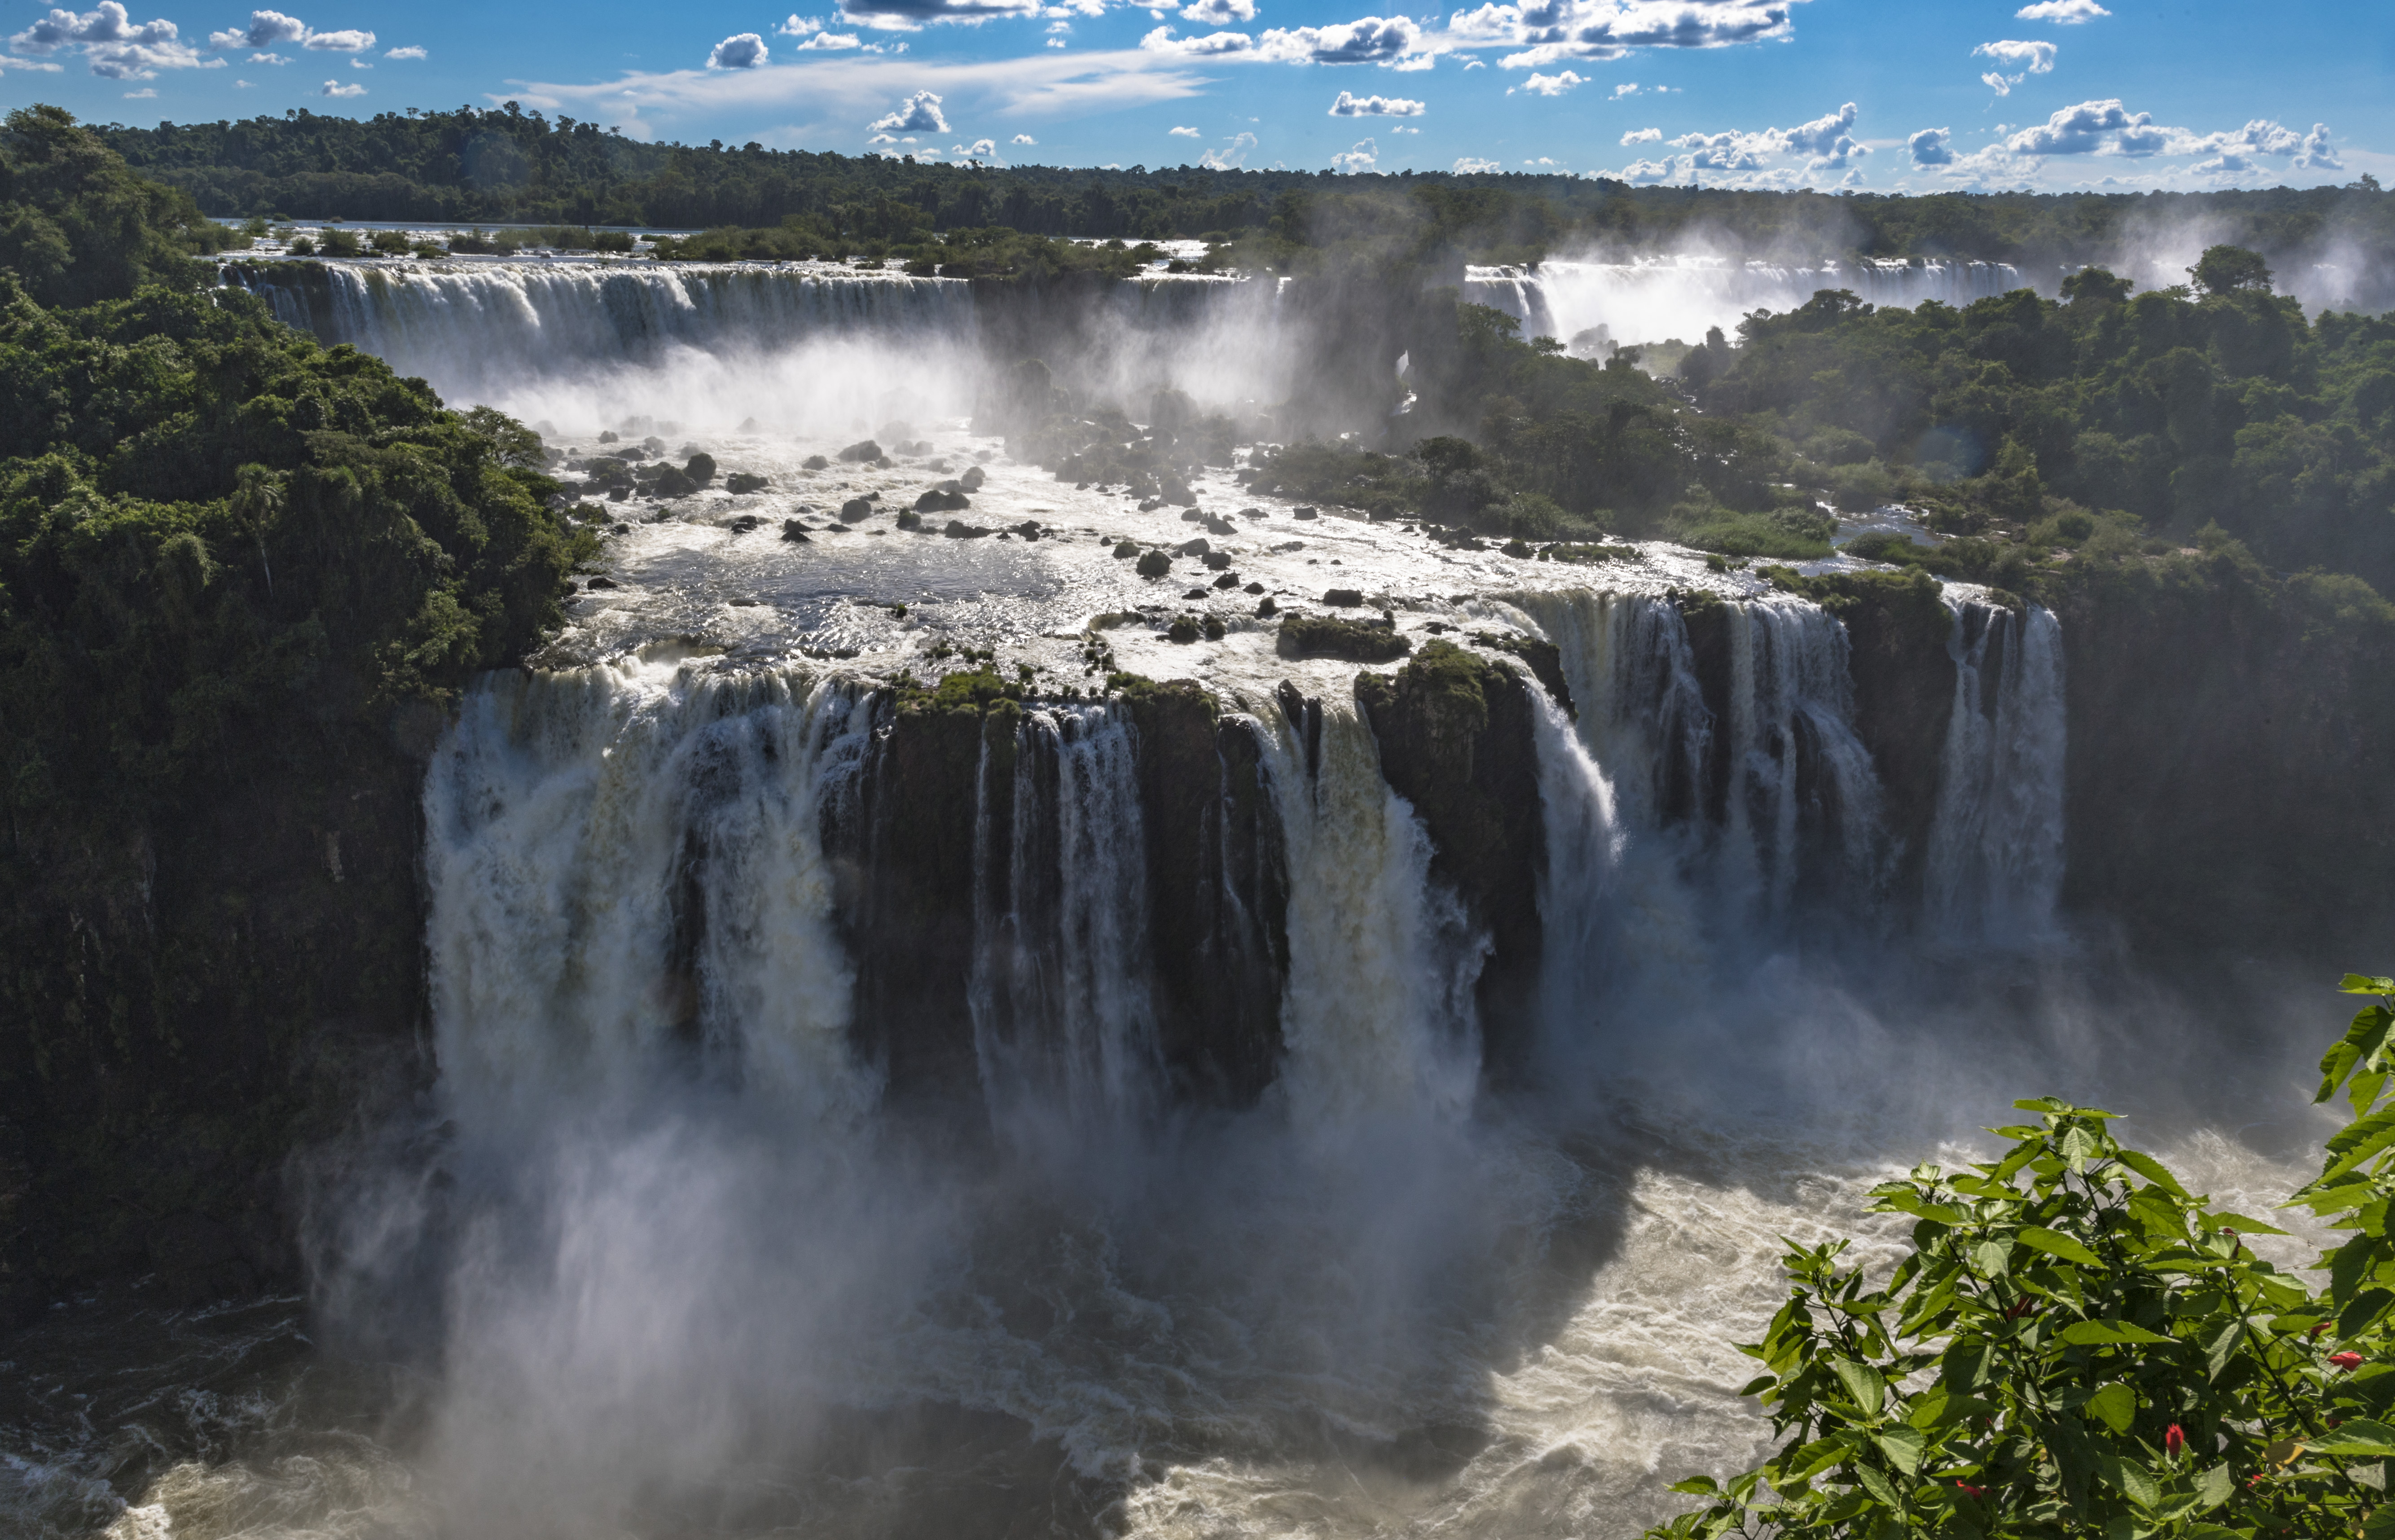 大瀑布由275个瀑布组成,最大的瀑布跌水90米,流量1500立方米/秒,被称